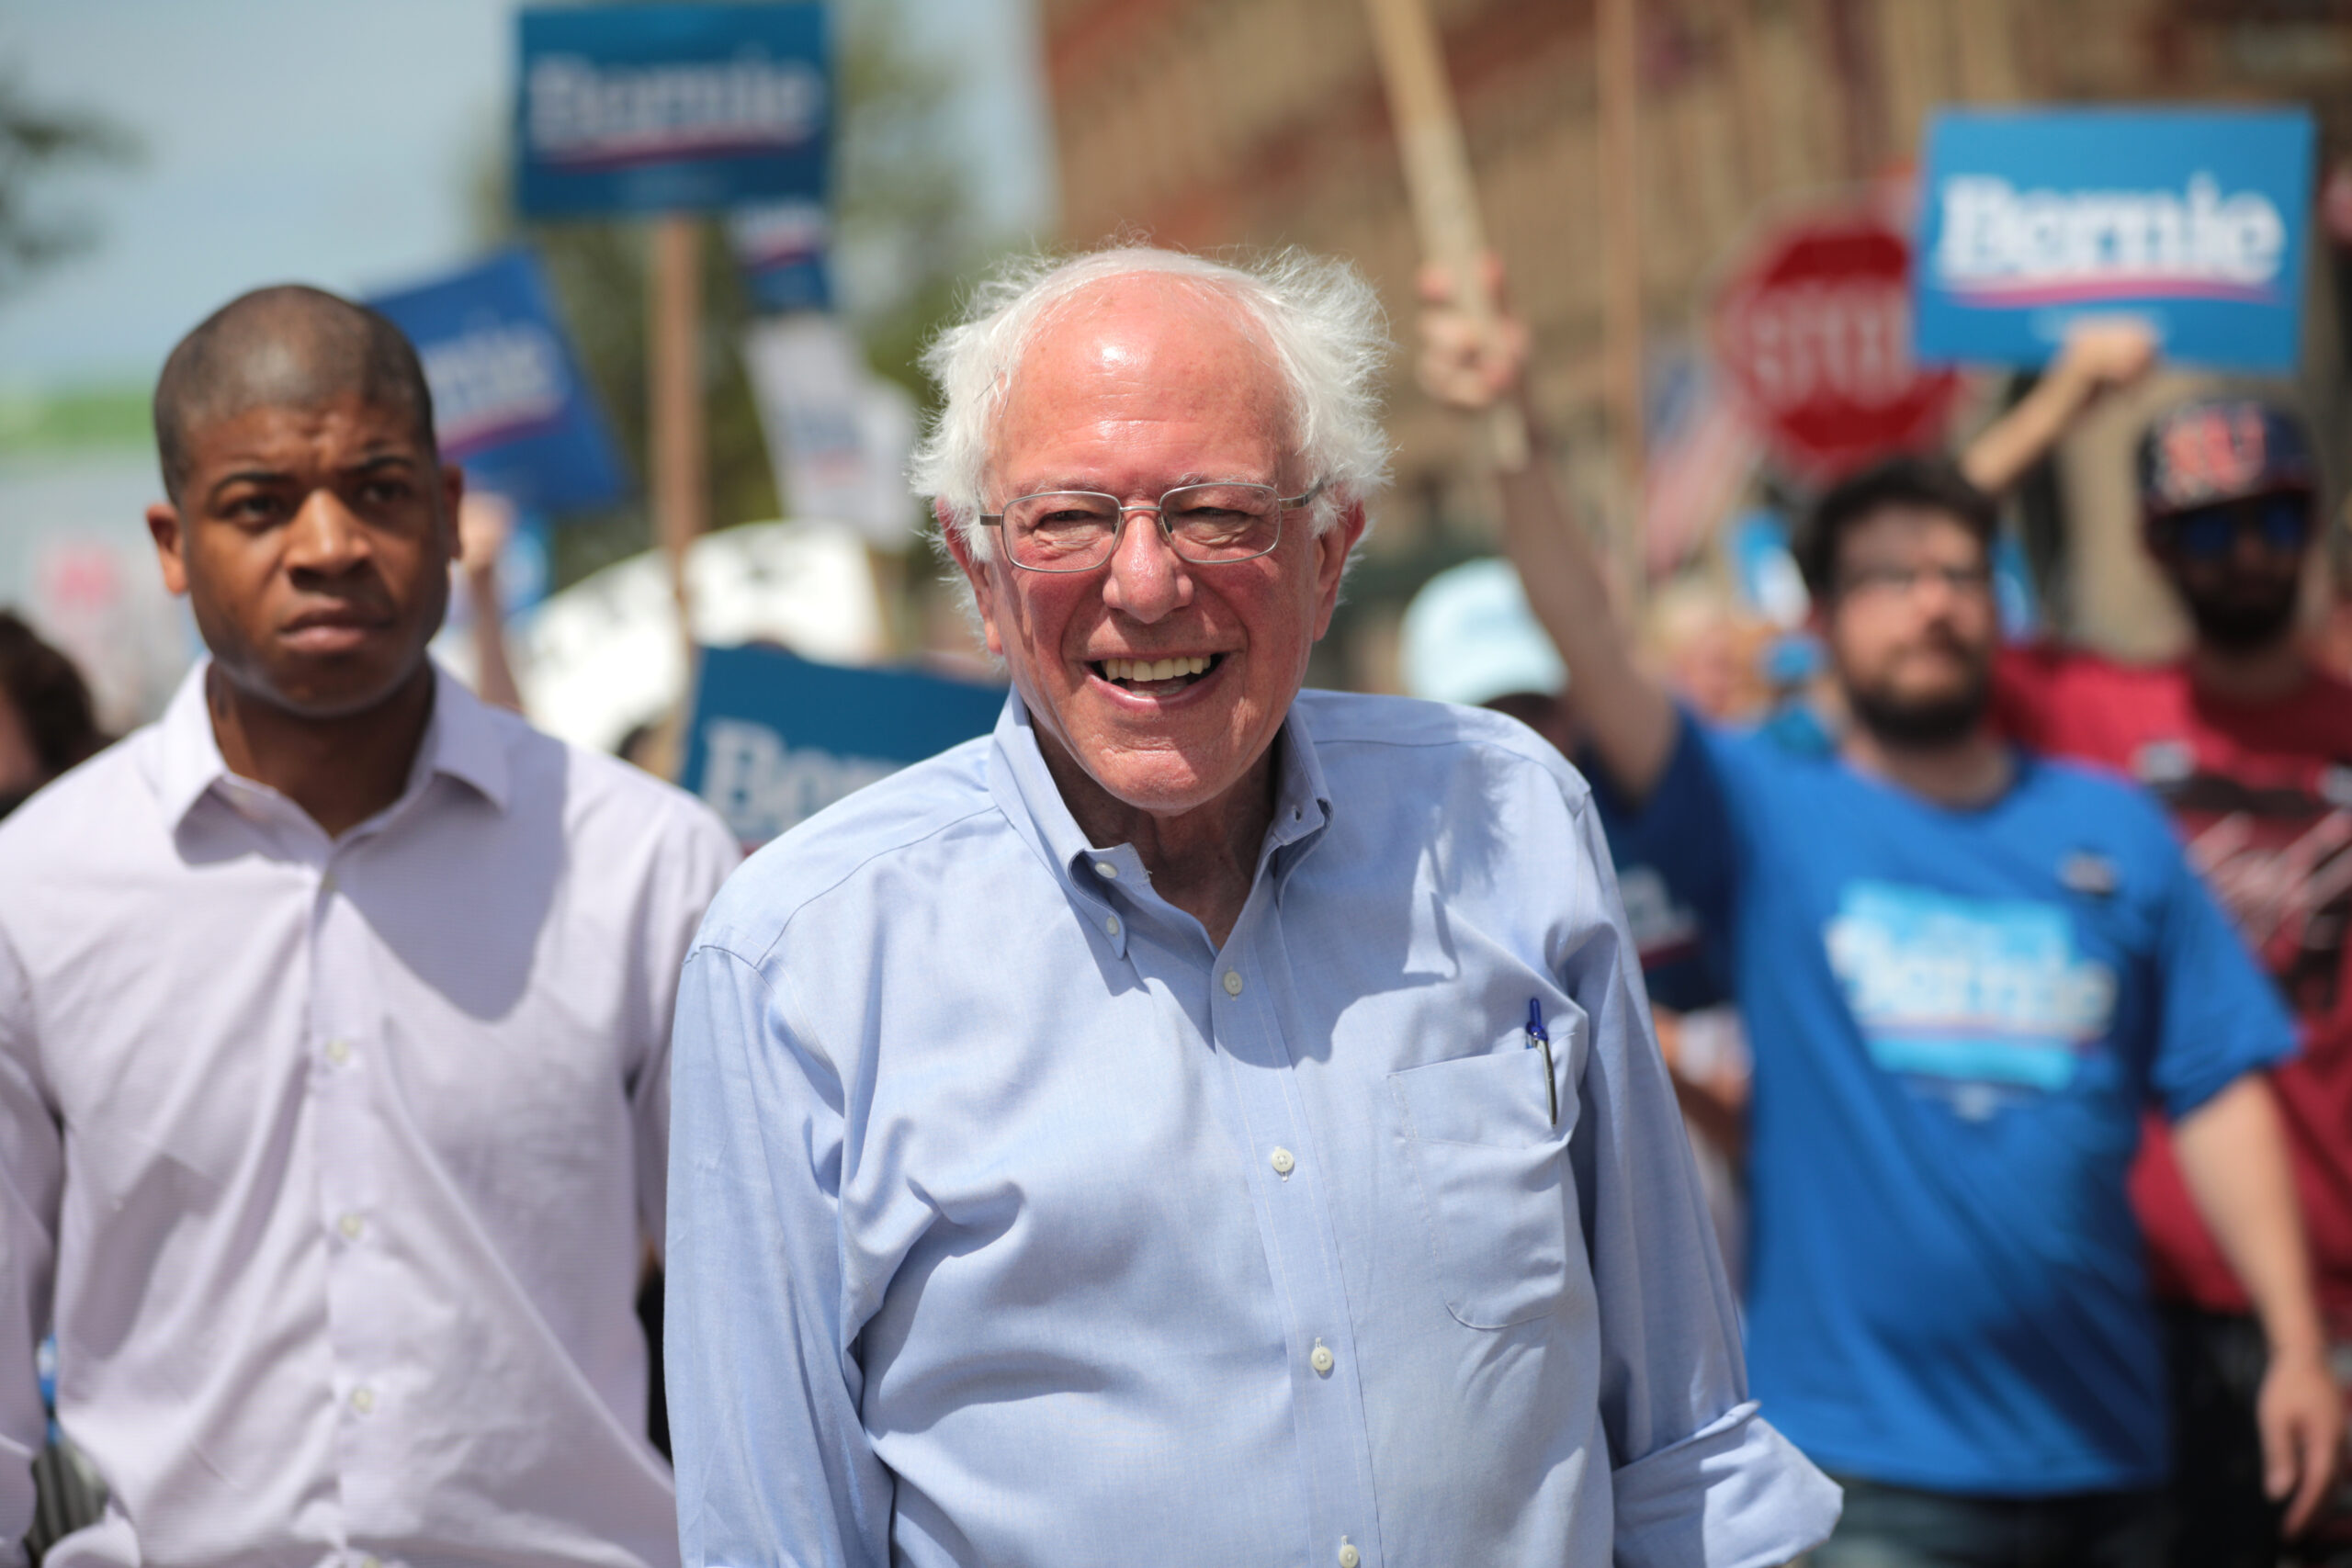 Bernie Sanders walking in a parade